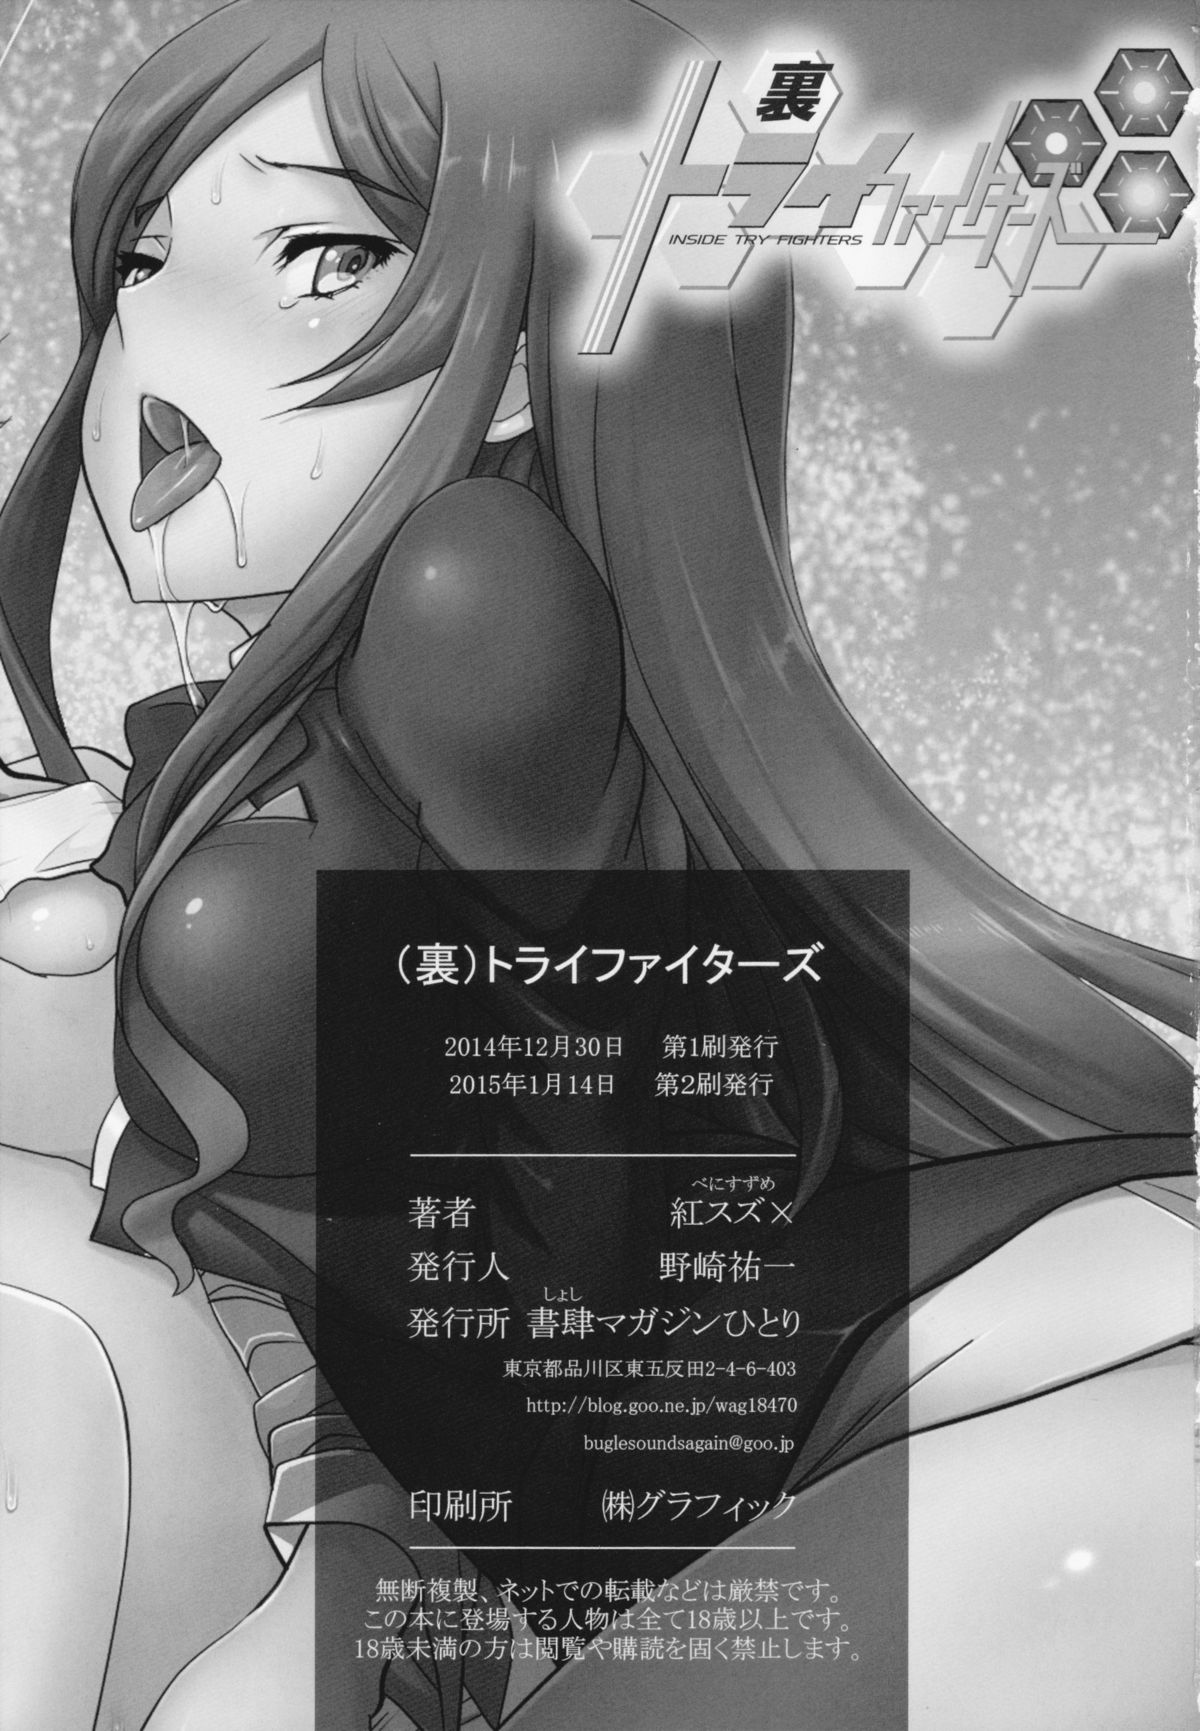 [Shoshi Magazine Hitori (Benisuzume)] (Ura) Try Fighters (Gundam Build Fighters Try) [2015-01-14] page 24 full